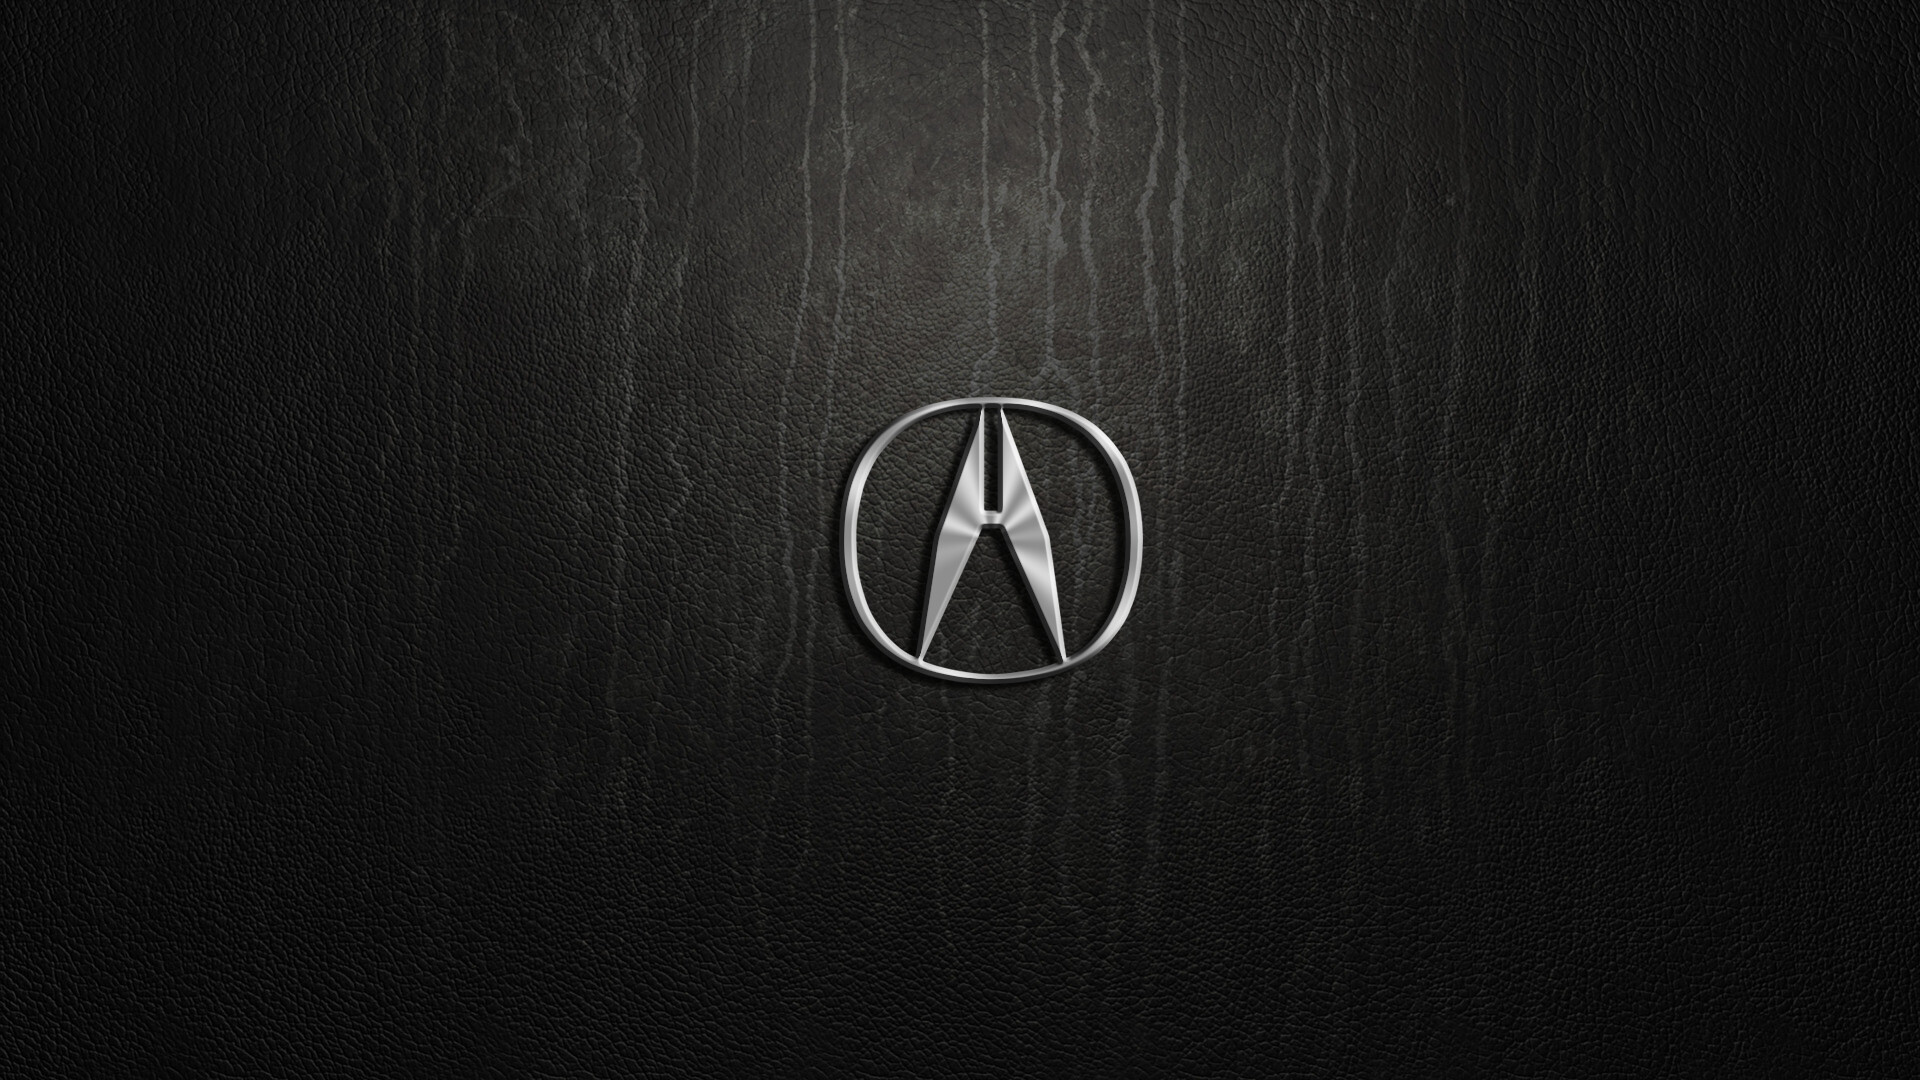 Logo, Acura Wallpaper, 1920x1080 Full HD Desktop